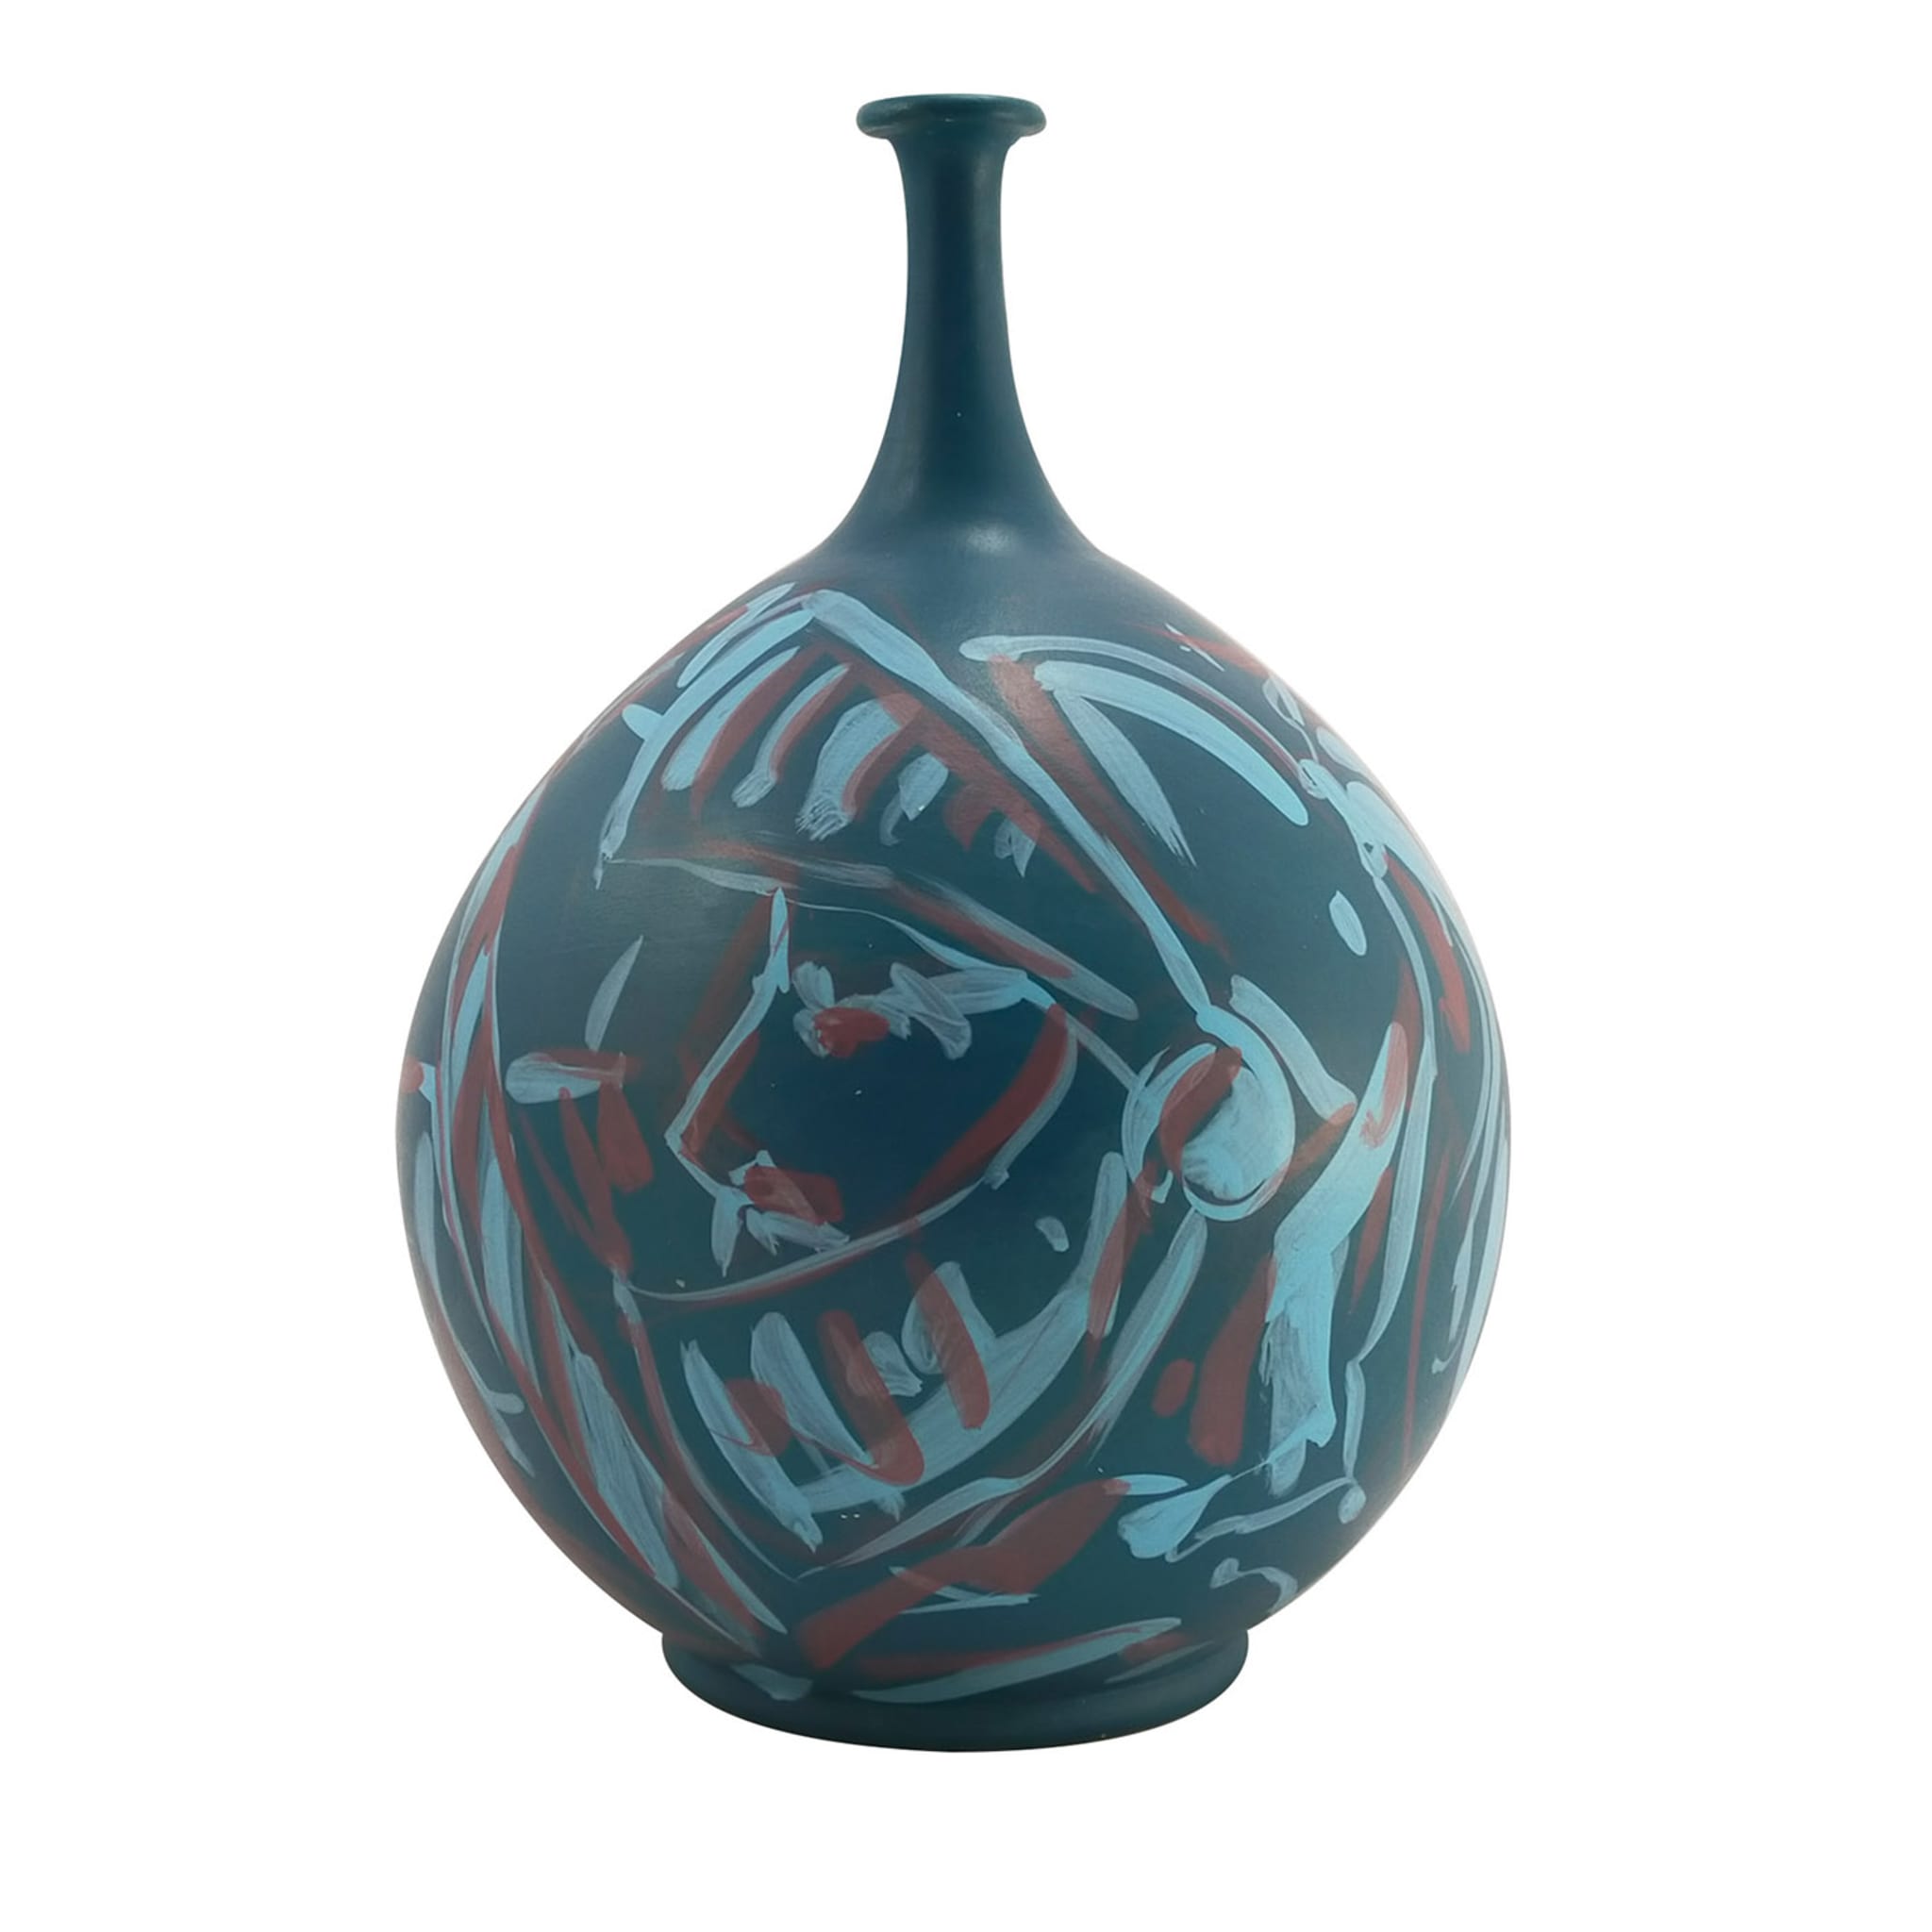 Single-Stem Teal/Light-Blue/Burgundy Terracotta Vase - Main view